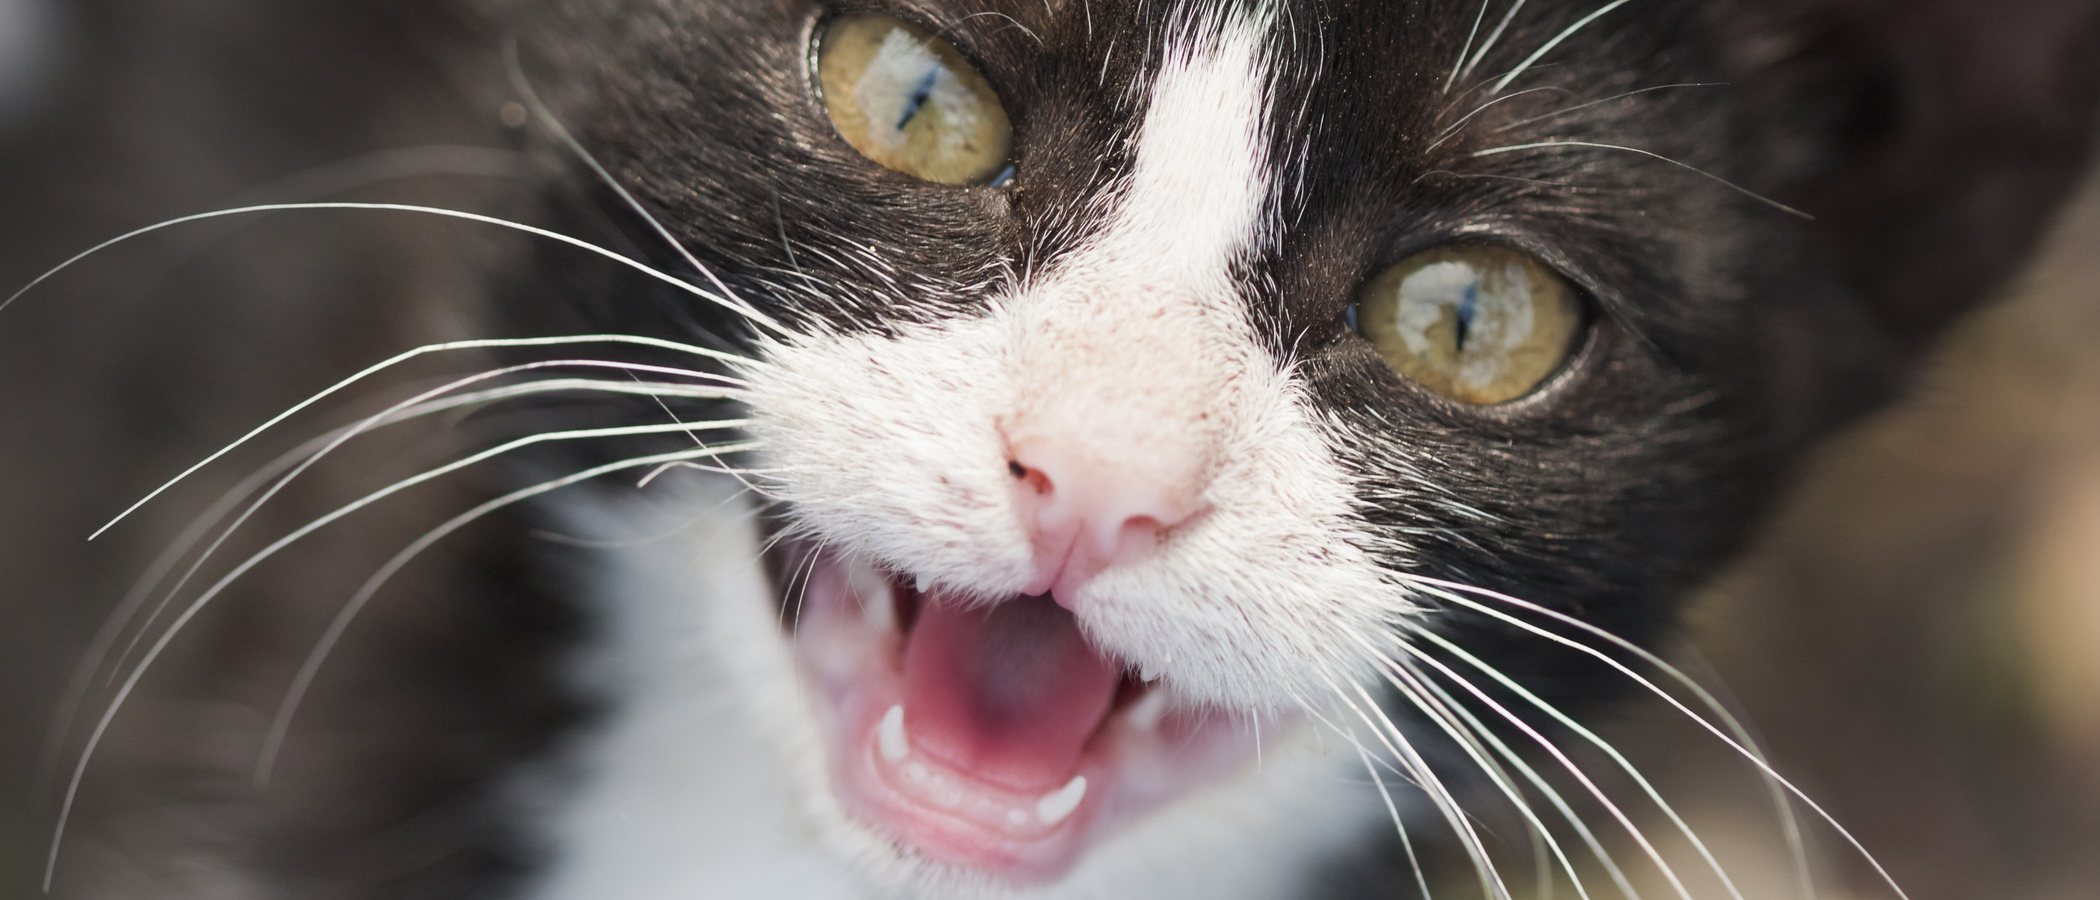 Problemas dentales en gatos: tipos y prevención